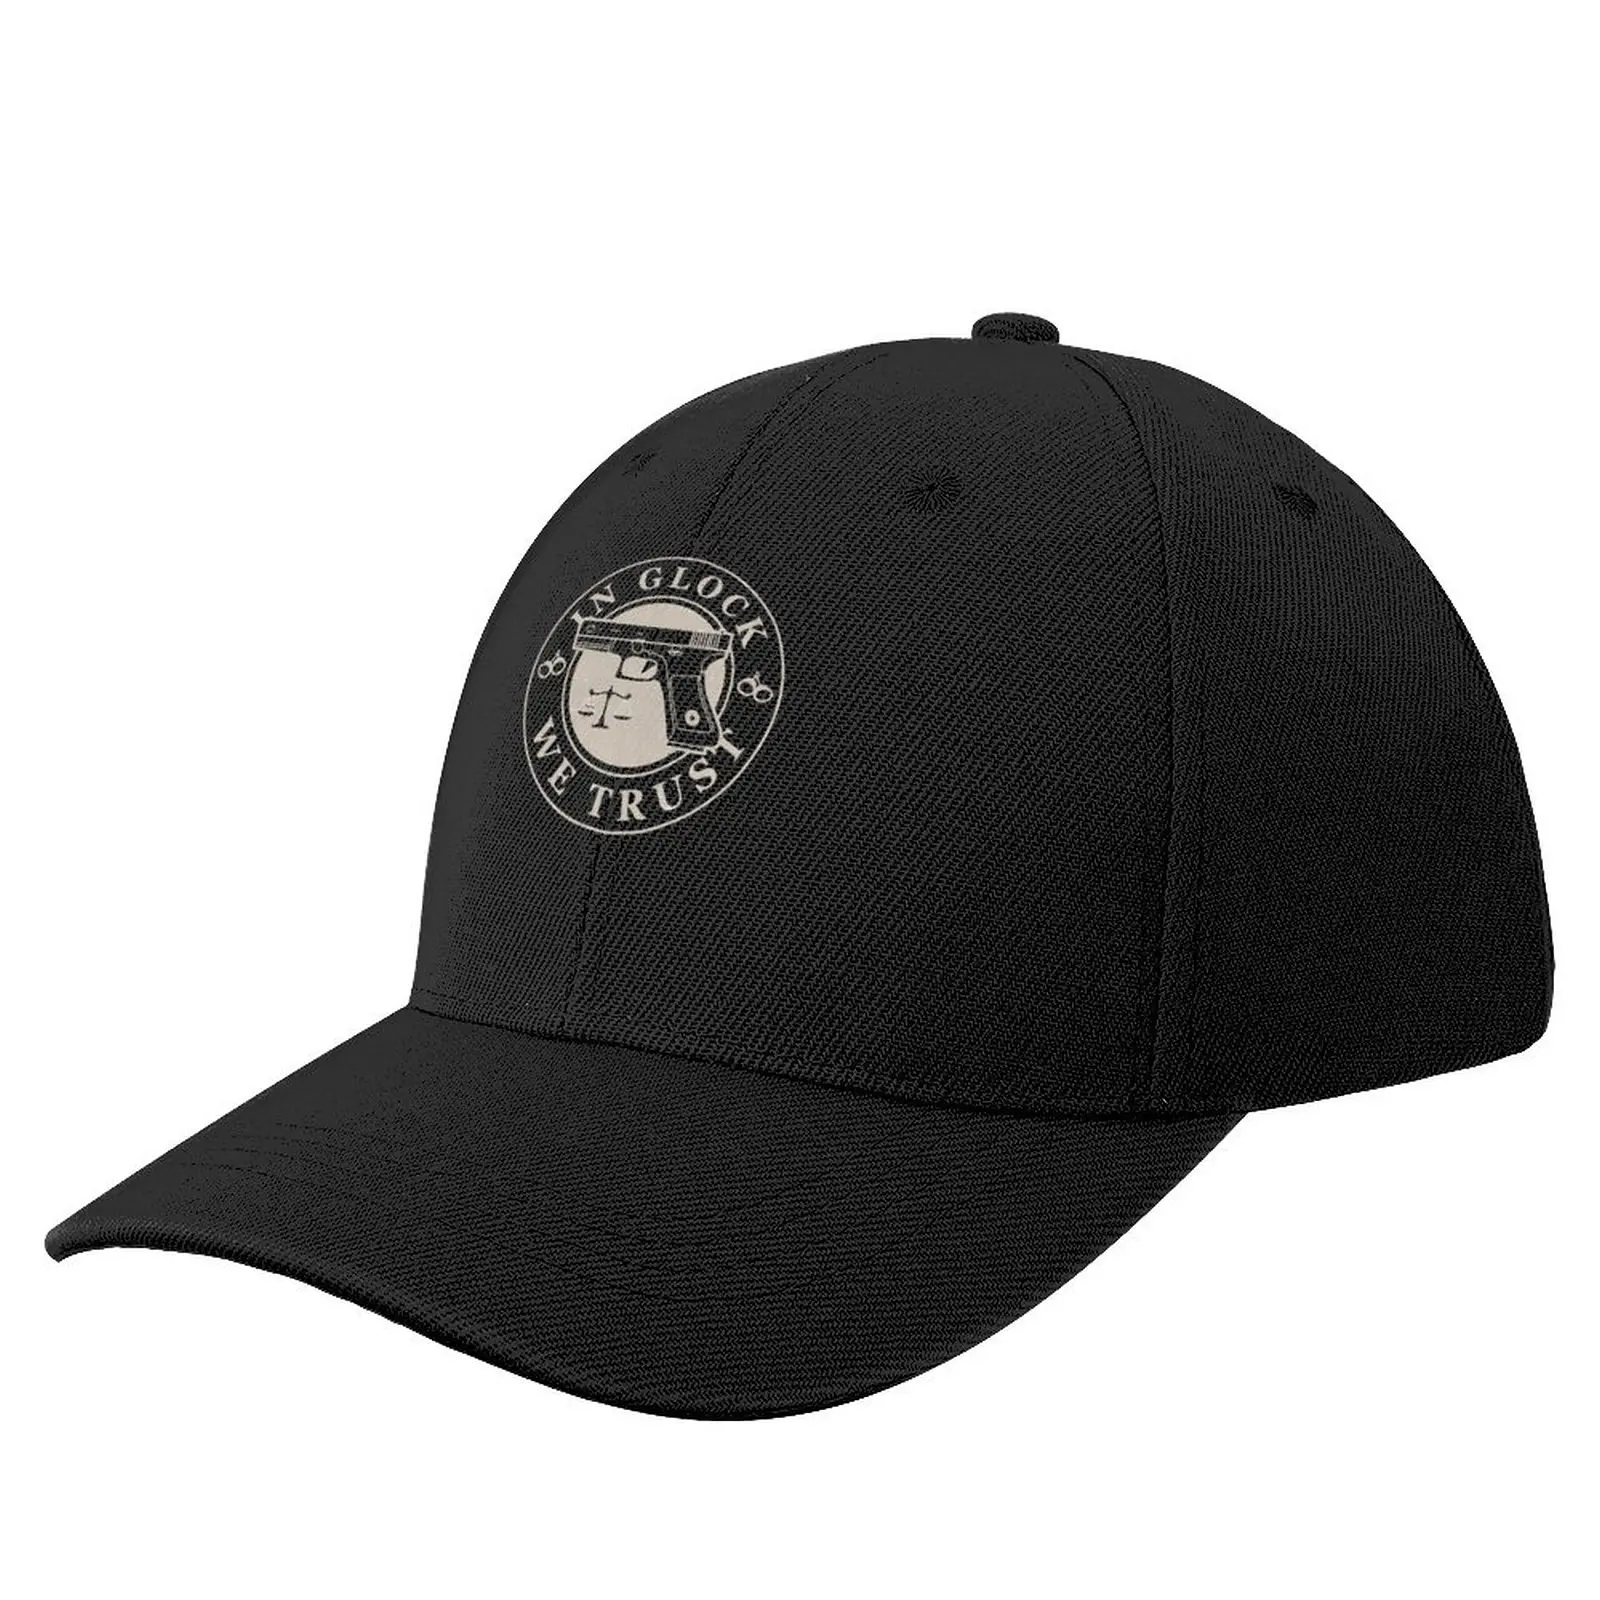 

In glock we trust Baseball Cap Bobble Hat tea hats cute Golf Hat Man custom hats Men Golf Wear Women's